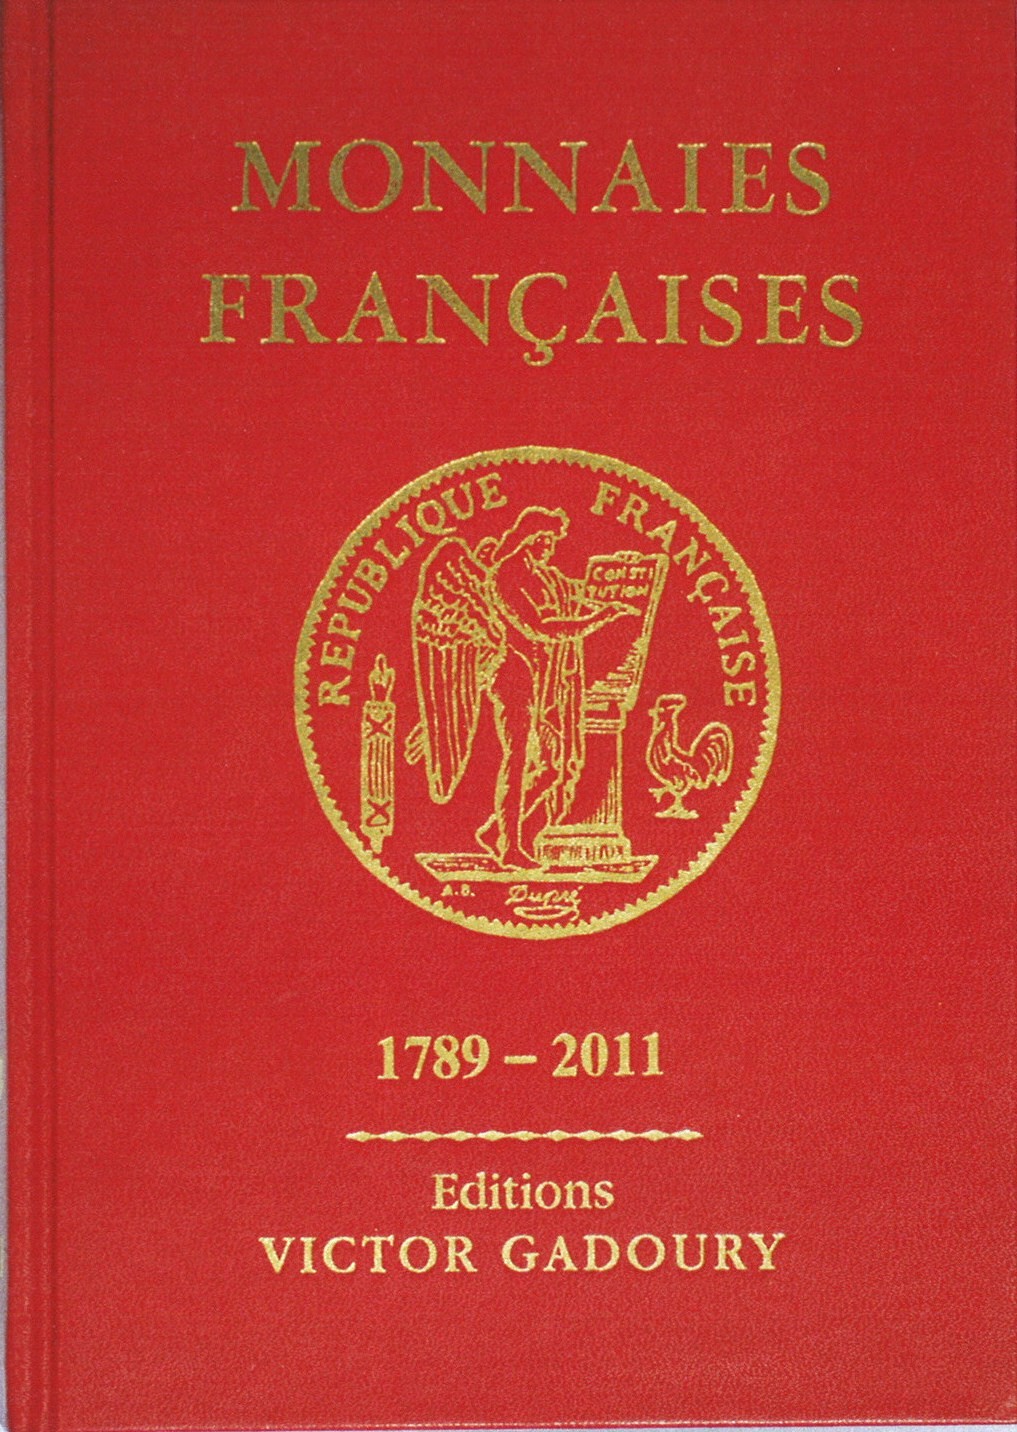 Monnaies françaises 1789 - 2011 - 20e édition GADOURY Victor, PASTRONE Francesco 